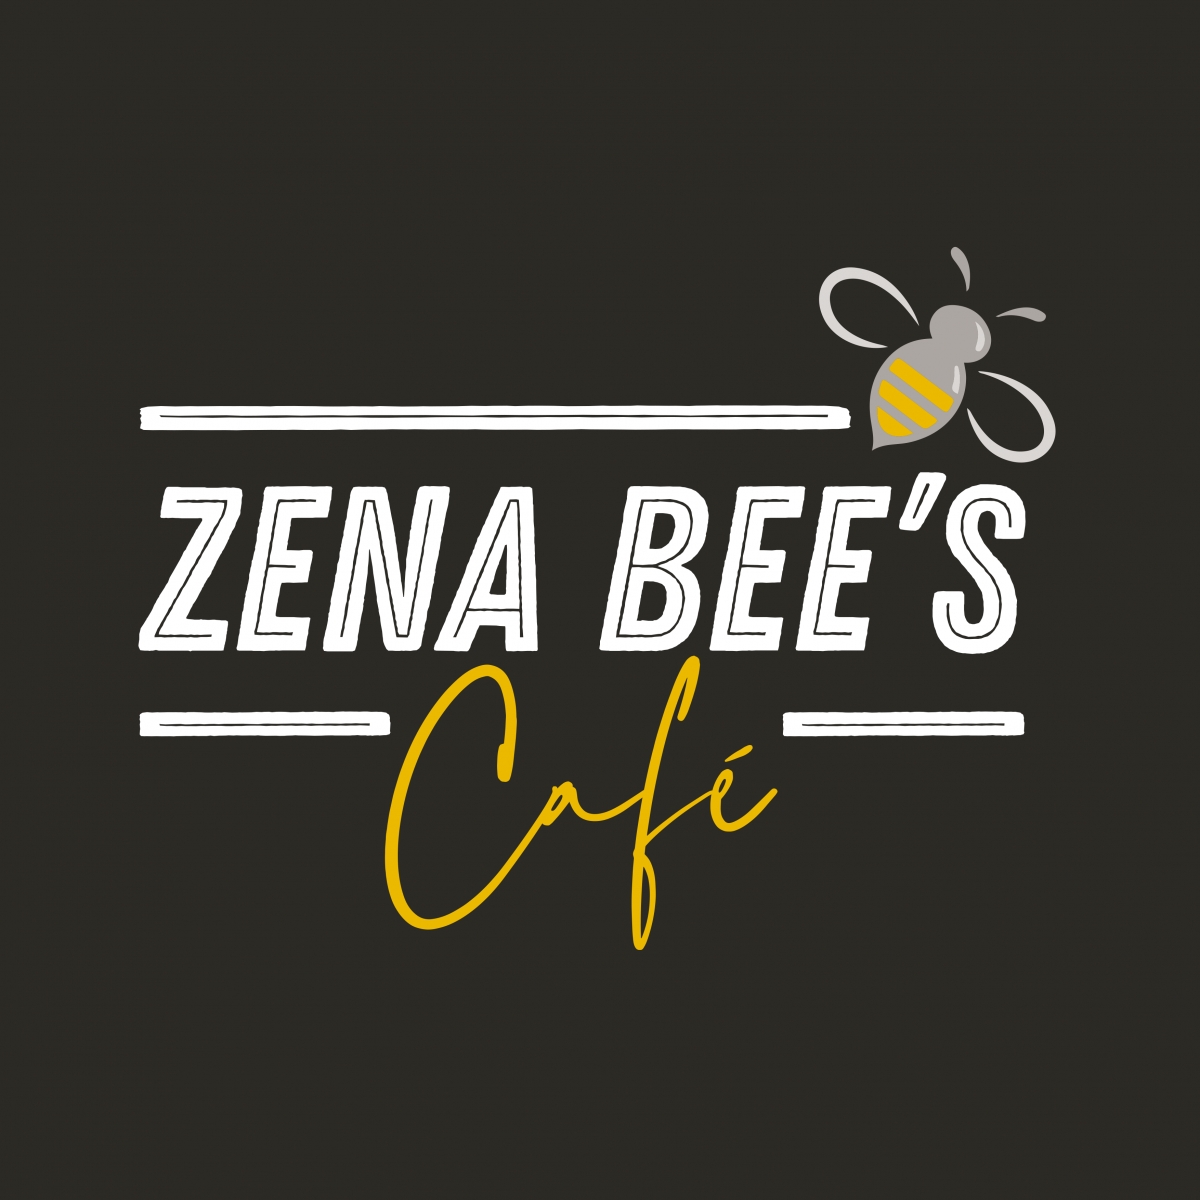 Zena Bees Caf